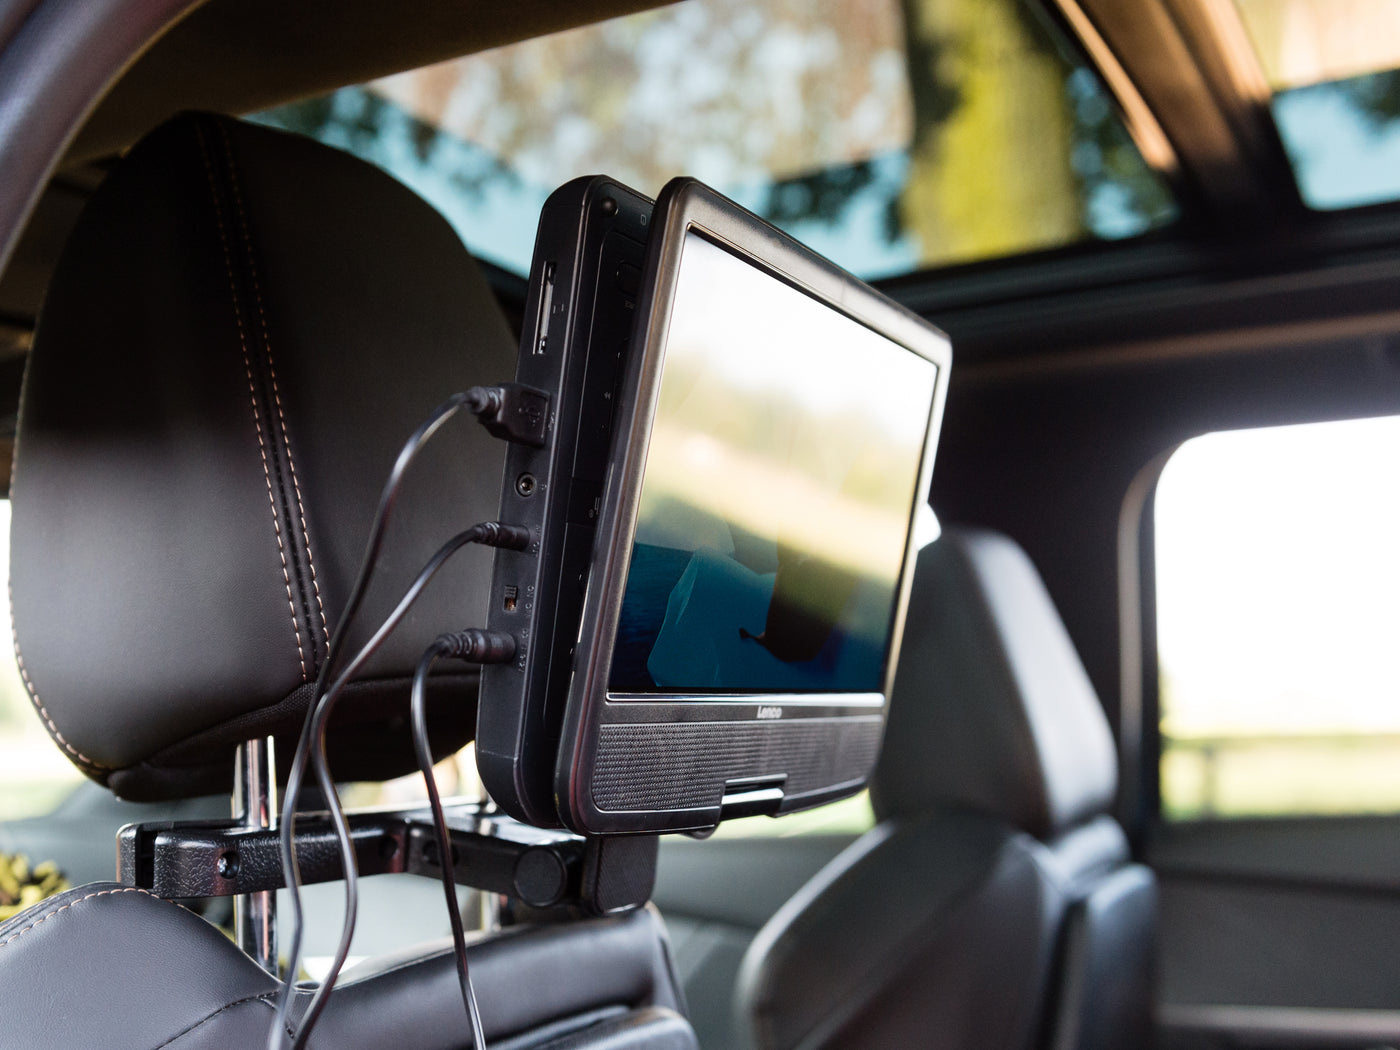 LENCO DVP-1017BK - Przenośny odtwarzacz DVD ze słuchawkami i uchwytem samochodowym - 10 cali - Obrotowy ekran - Słuchawki Bluetooth®